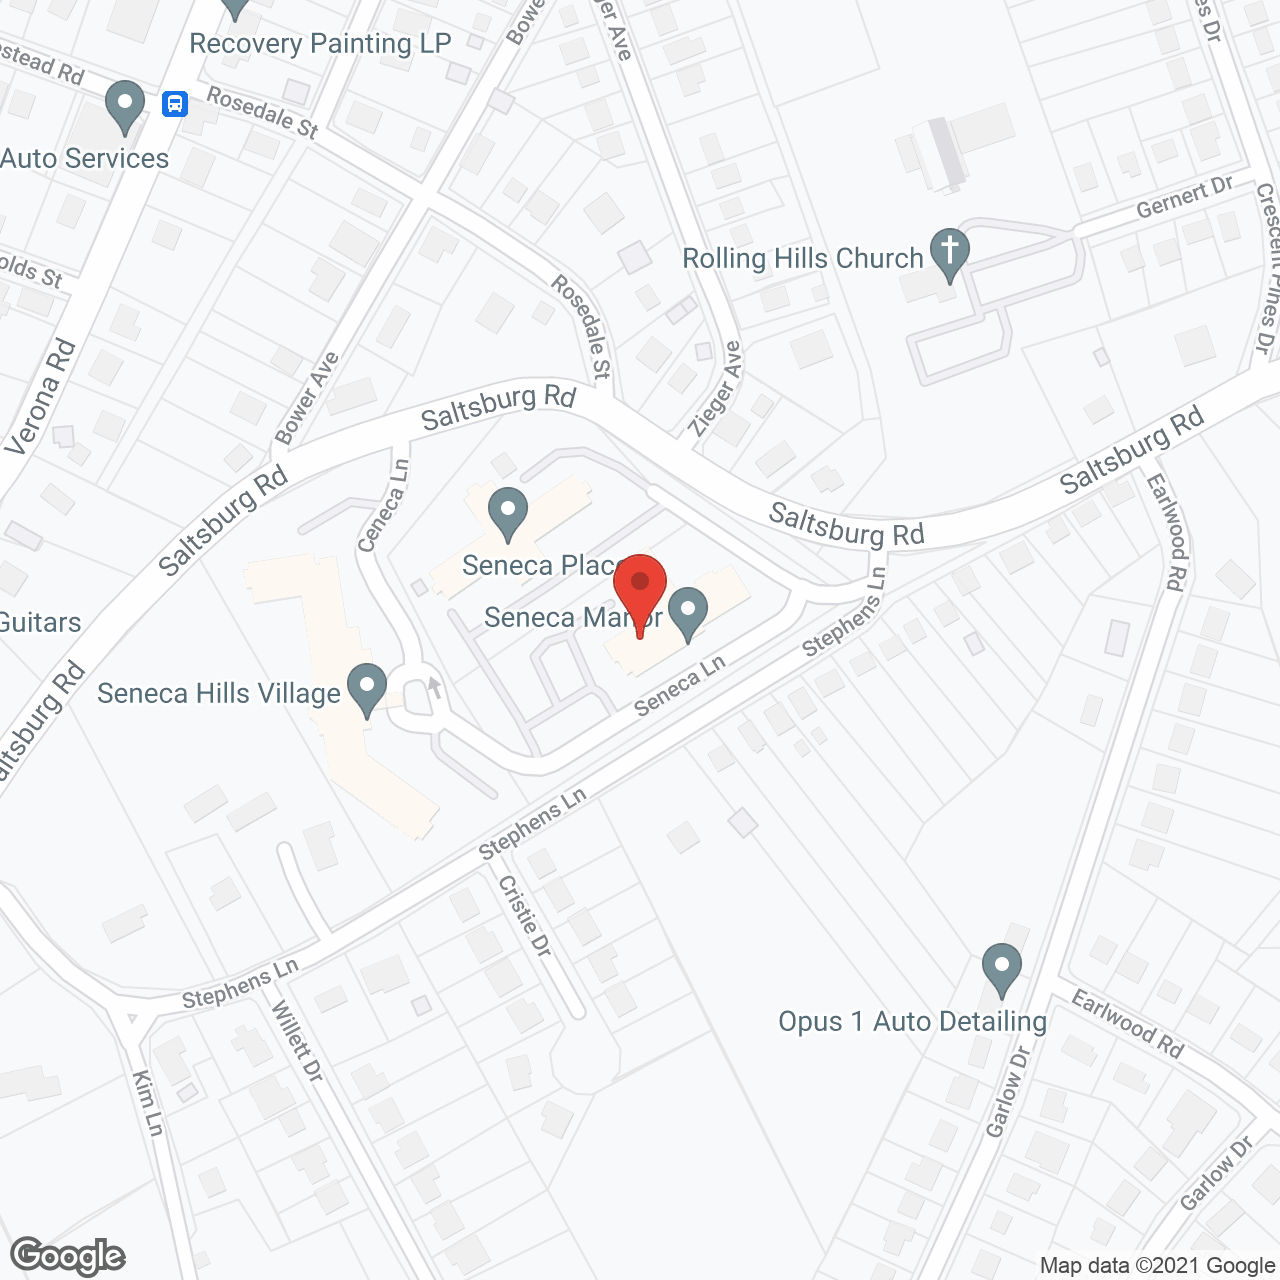 Seneca Manor in google map